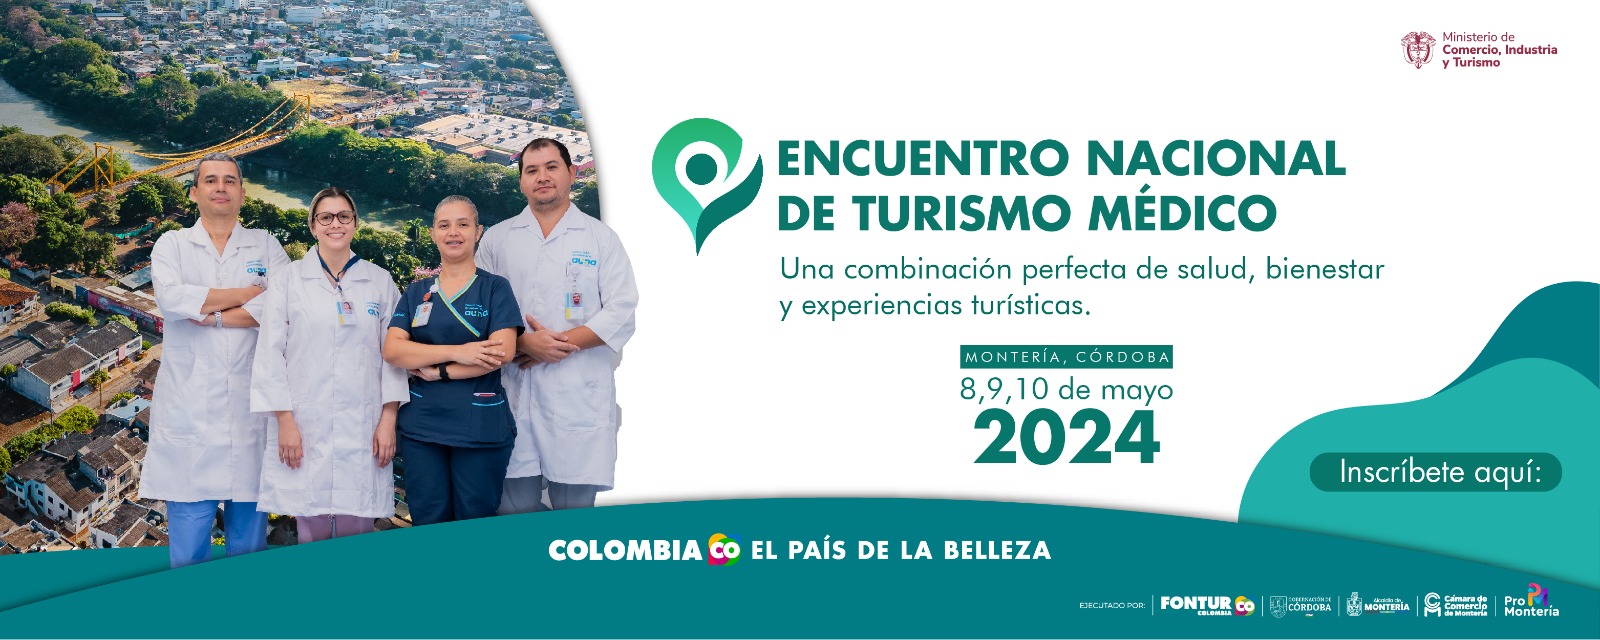 Encuentro Nacional de Turismo Médico